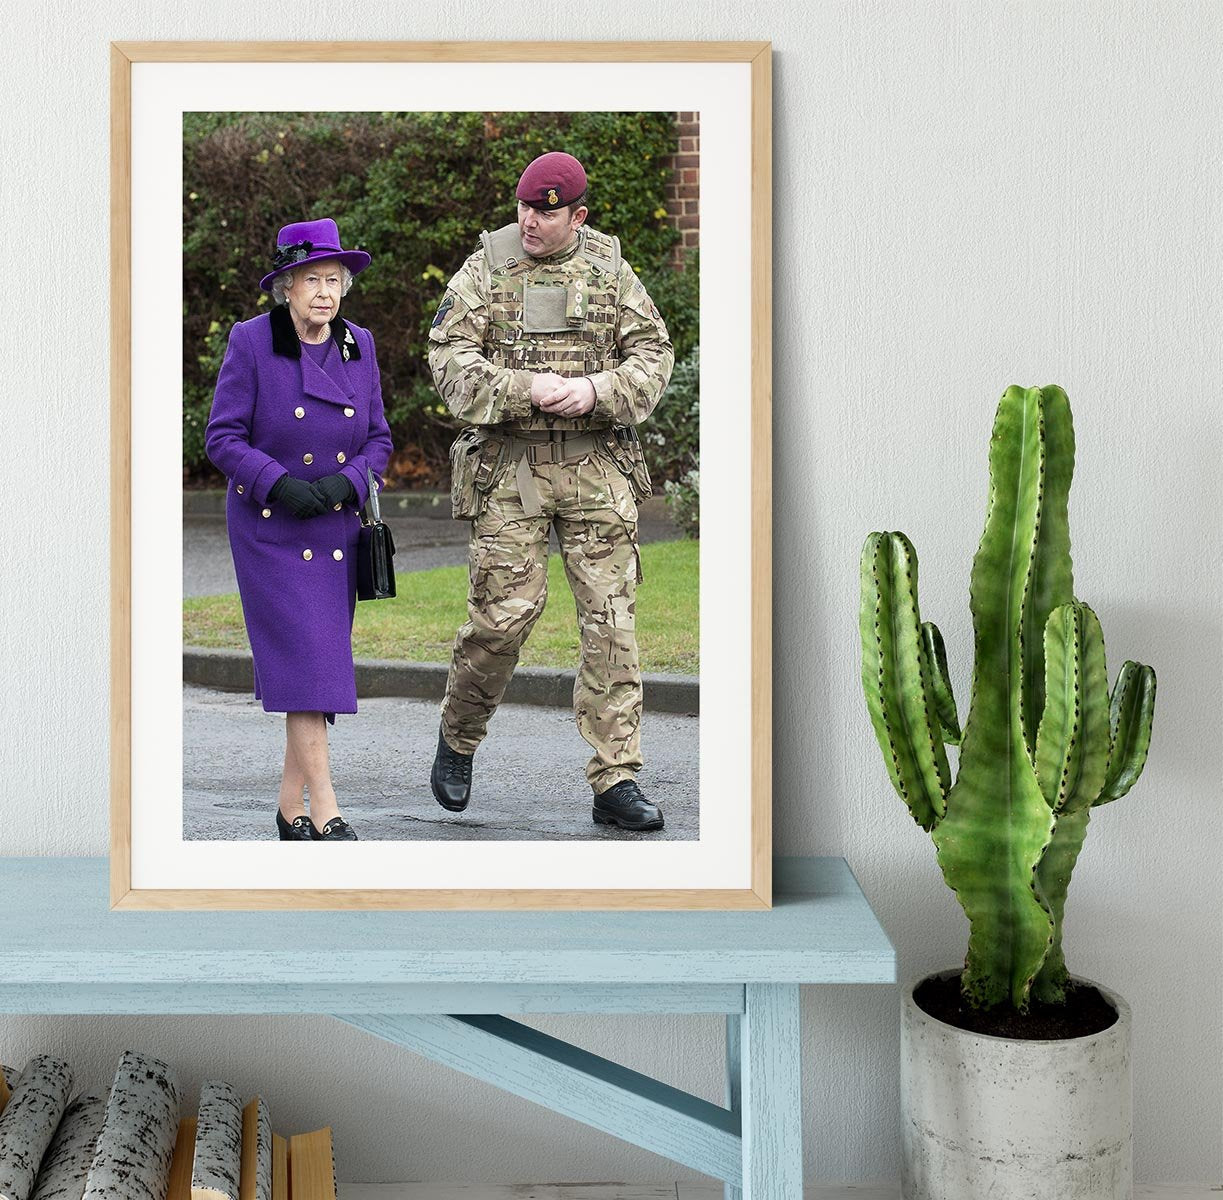 Queen Elizabeth II meeting members of the Household Cavalry Framed Print - Canvas Art Rocks - 3